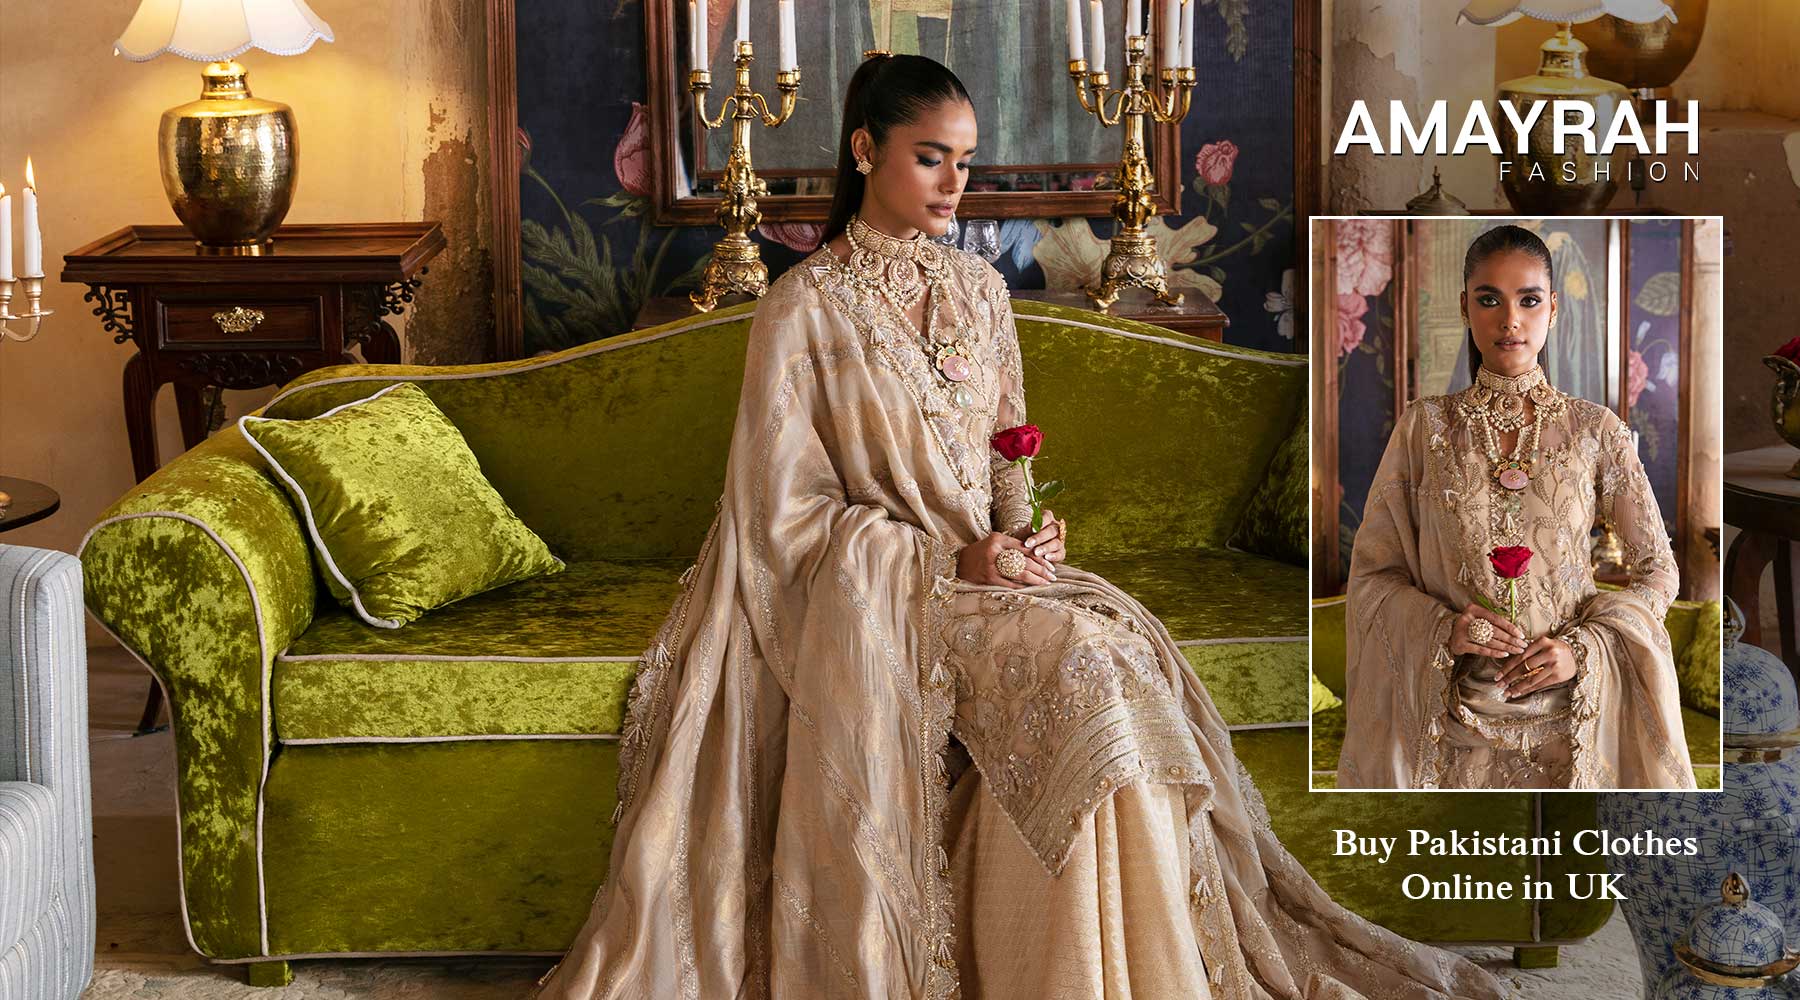 Exploring Pakistani Fashion in the UK with Amayrah Fashion